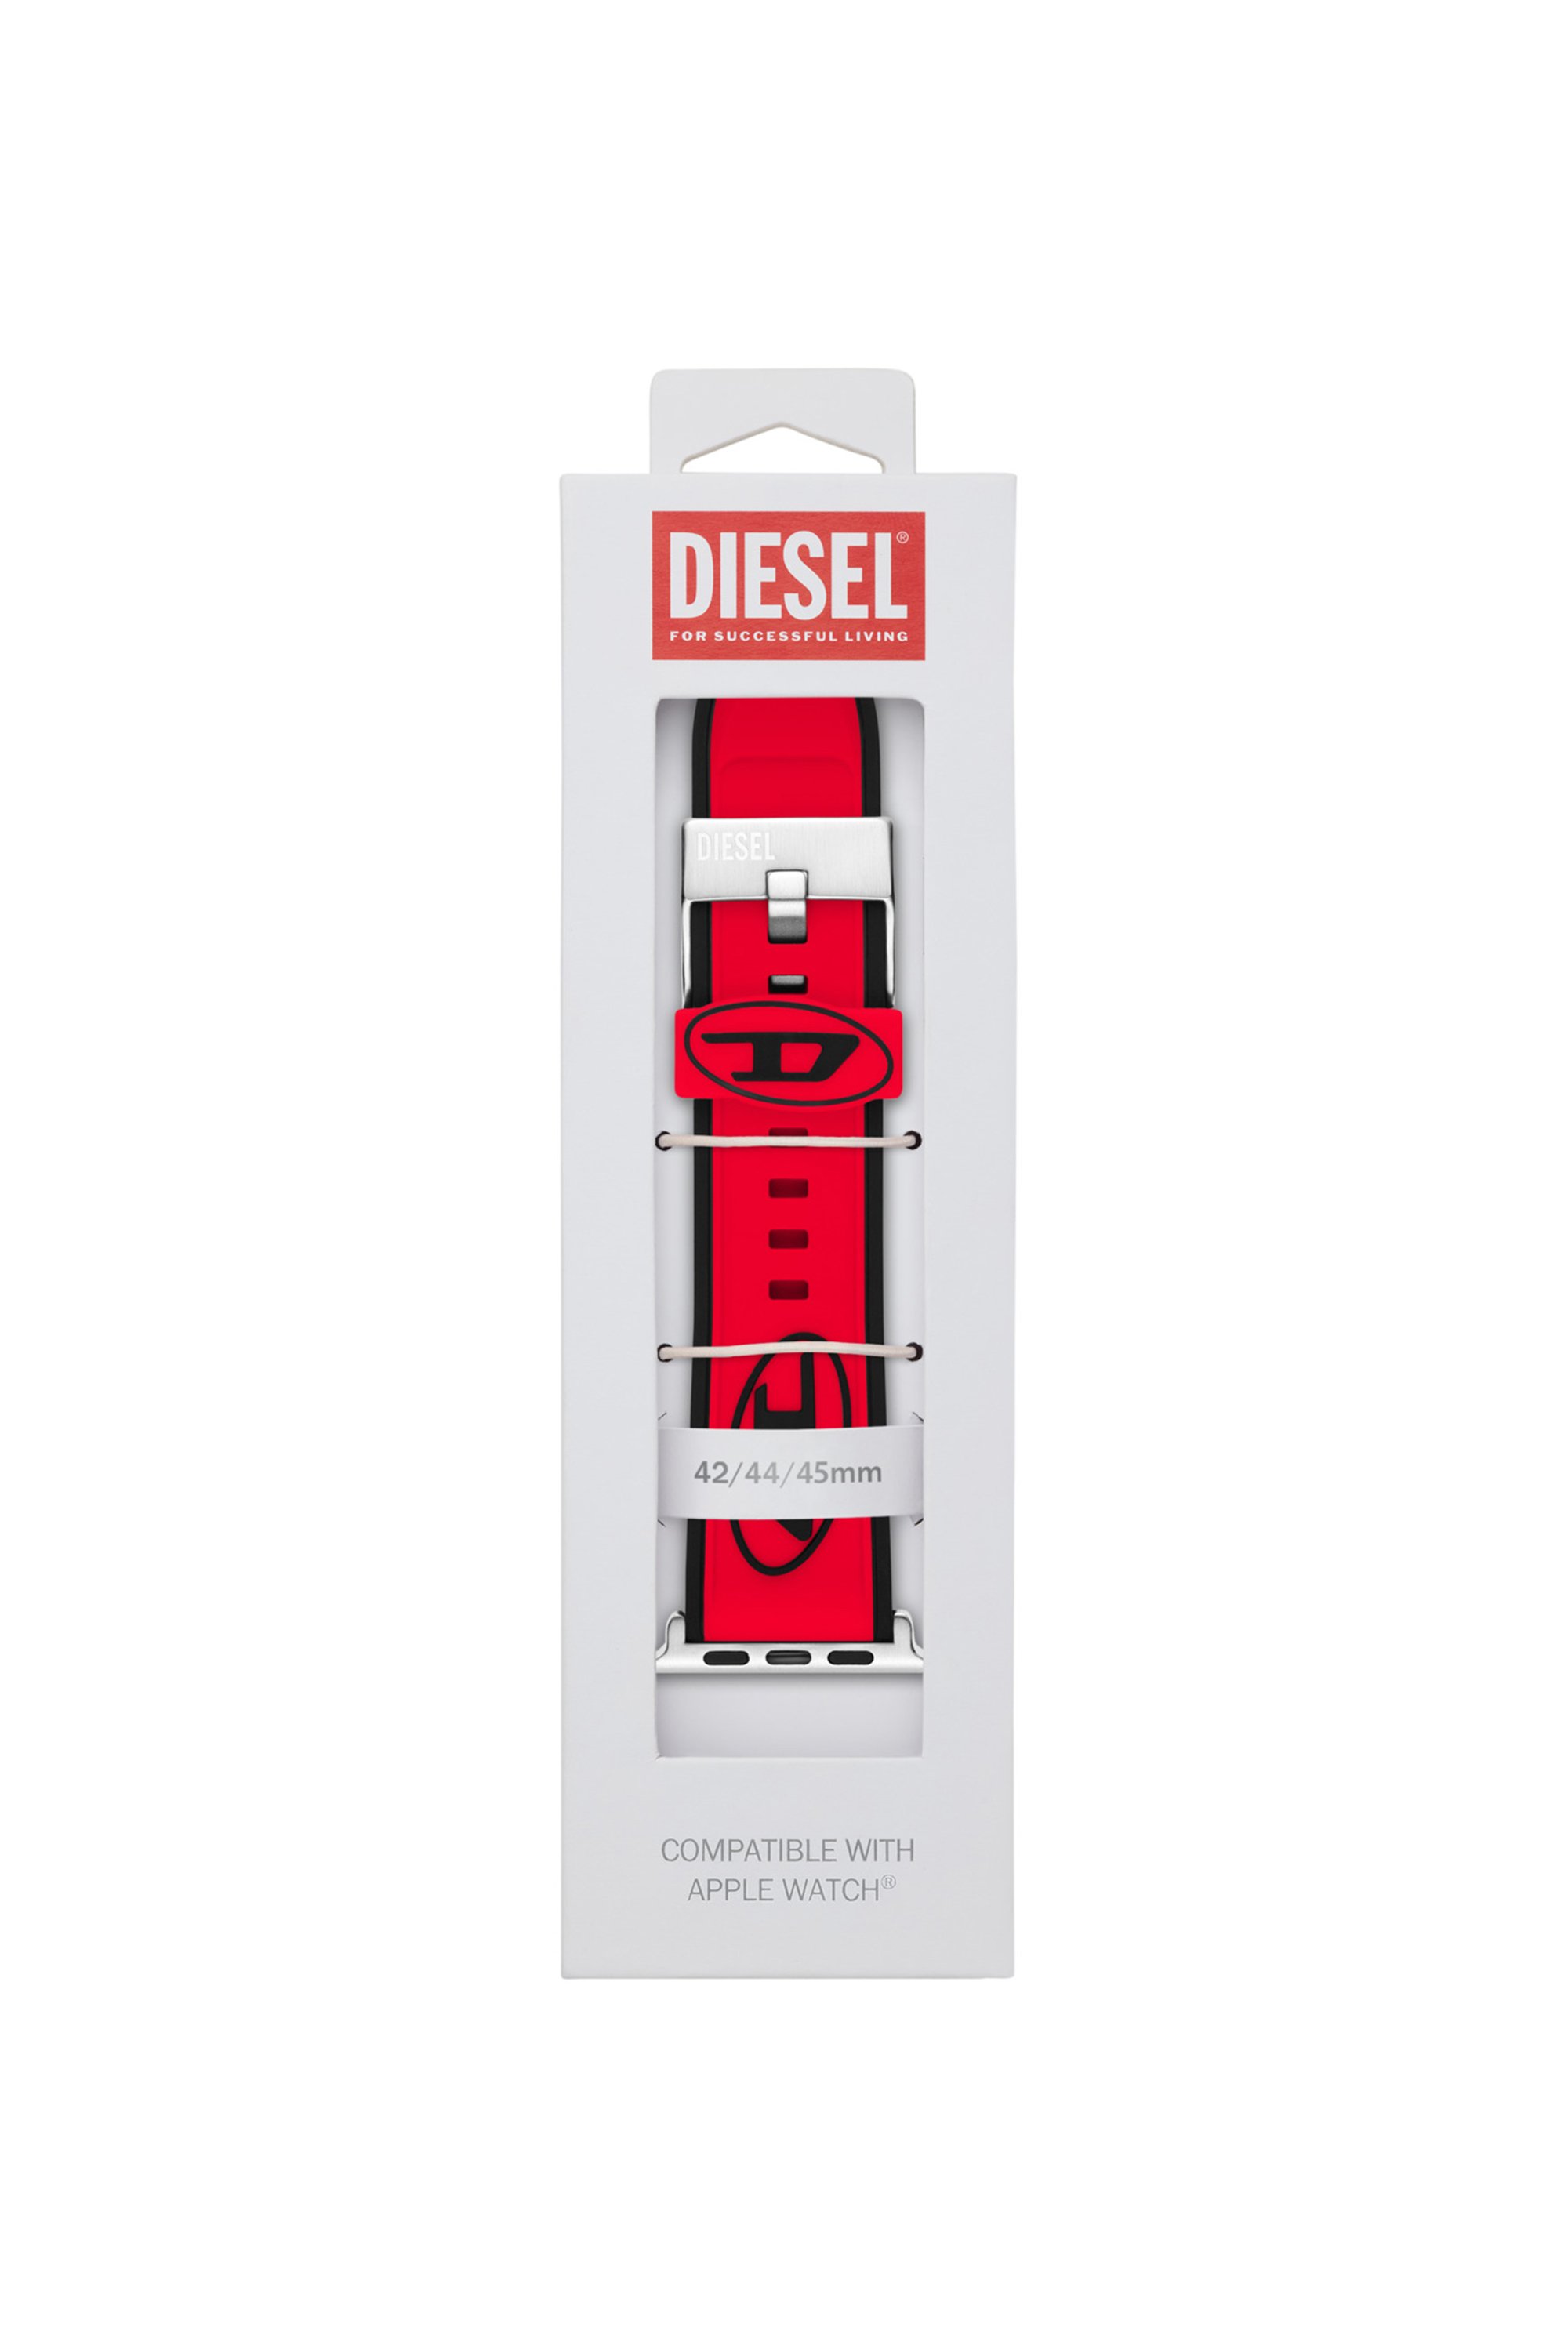 Diesel - DSS010, Red - Image 2